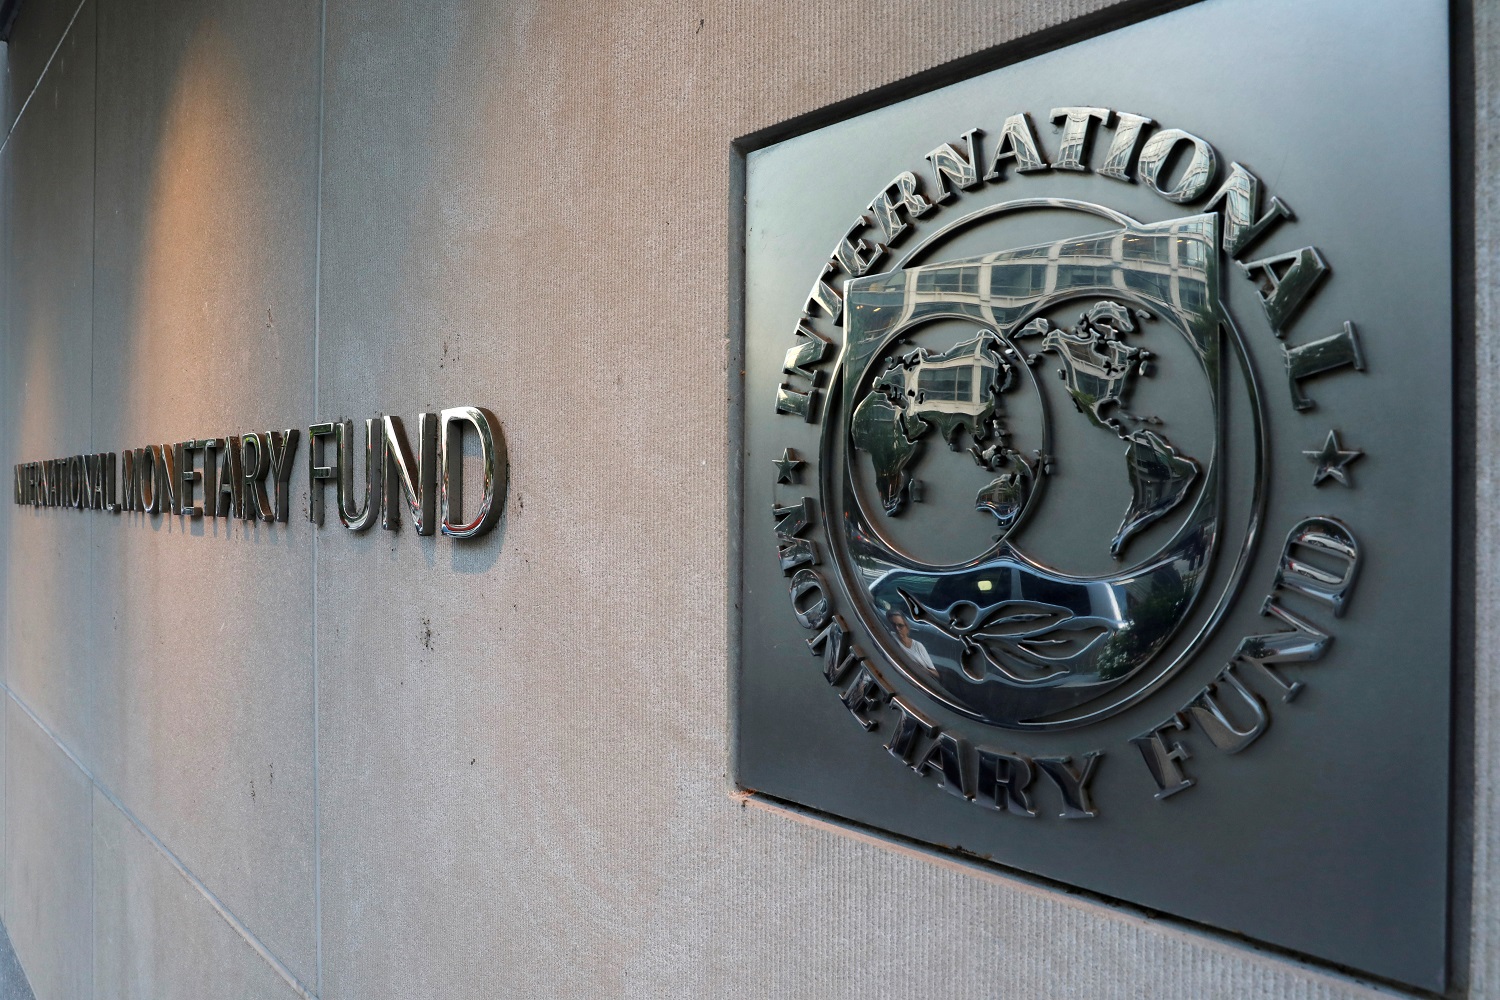  شعار صندوق النقد الدولي خارج مقره الرئيسي في واشنطن . 4 سبتمبر 2018. (رويترز) / يوري جريباس 